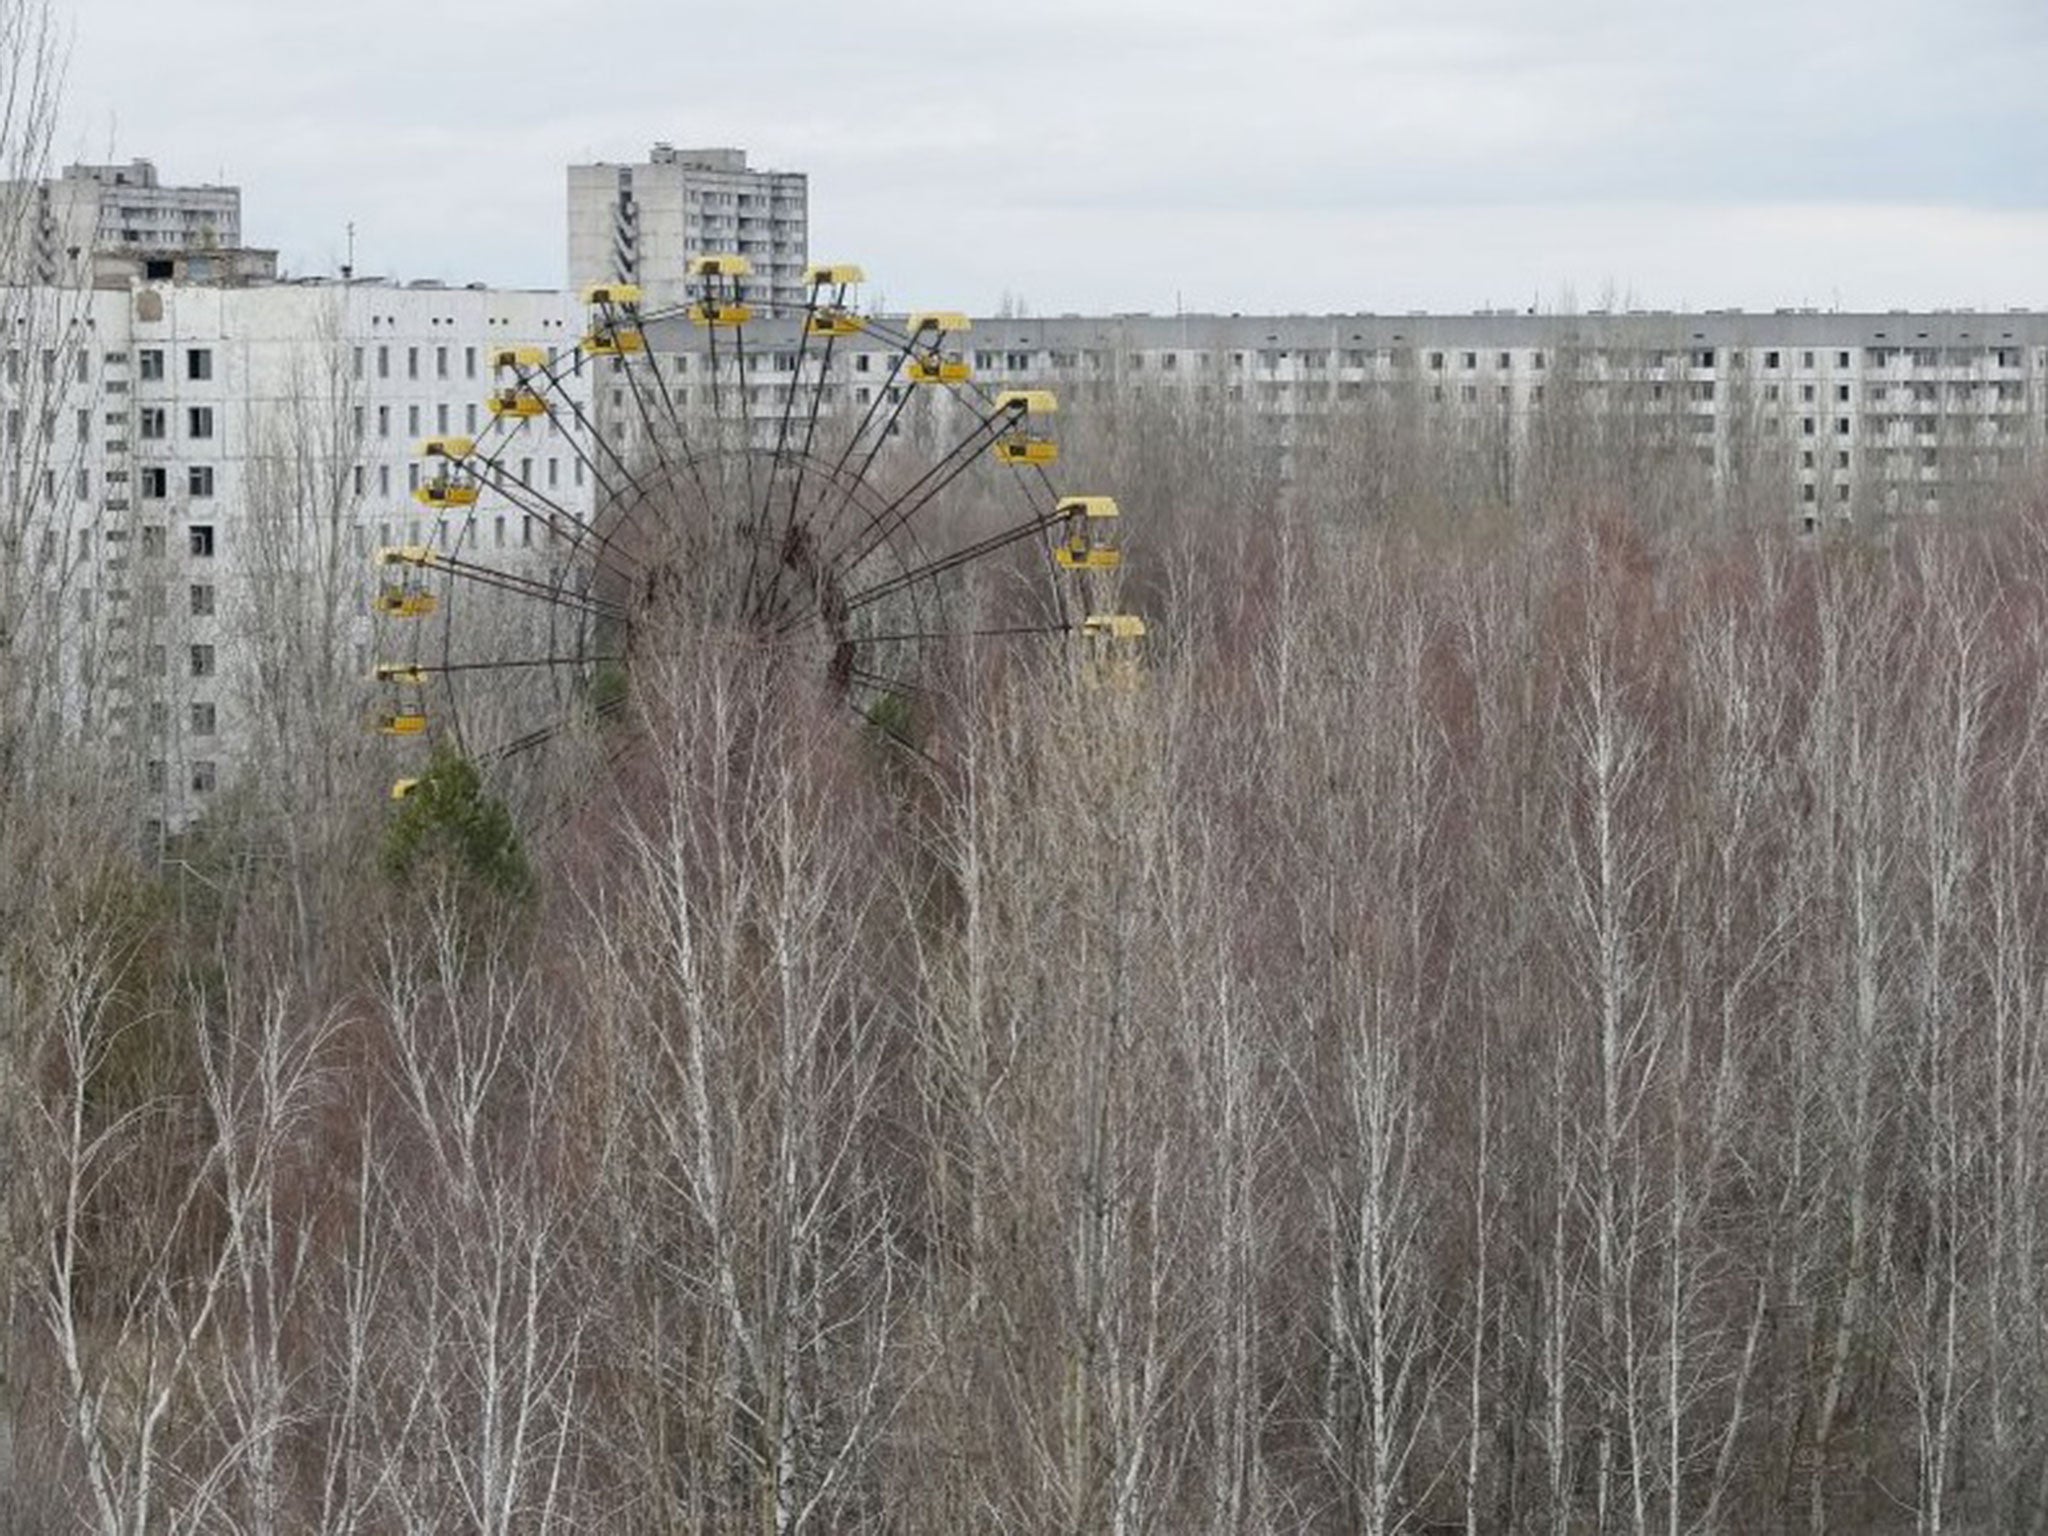 The abandoned city of Pripyat near Chernobyl